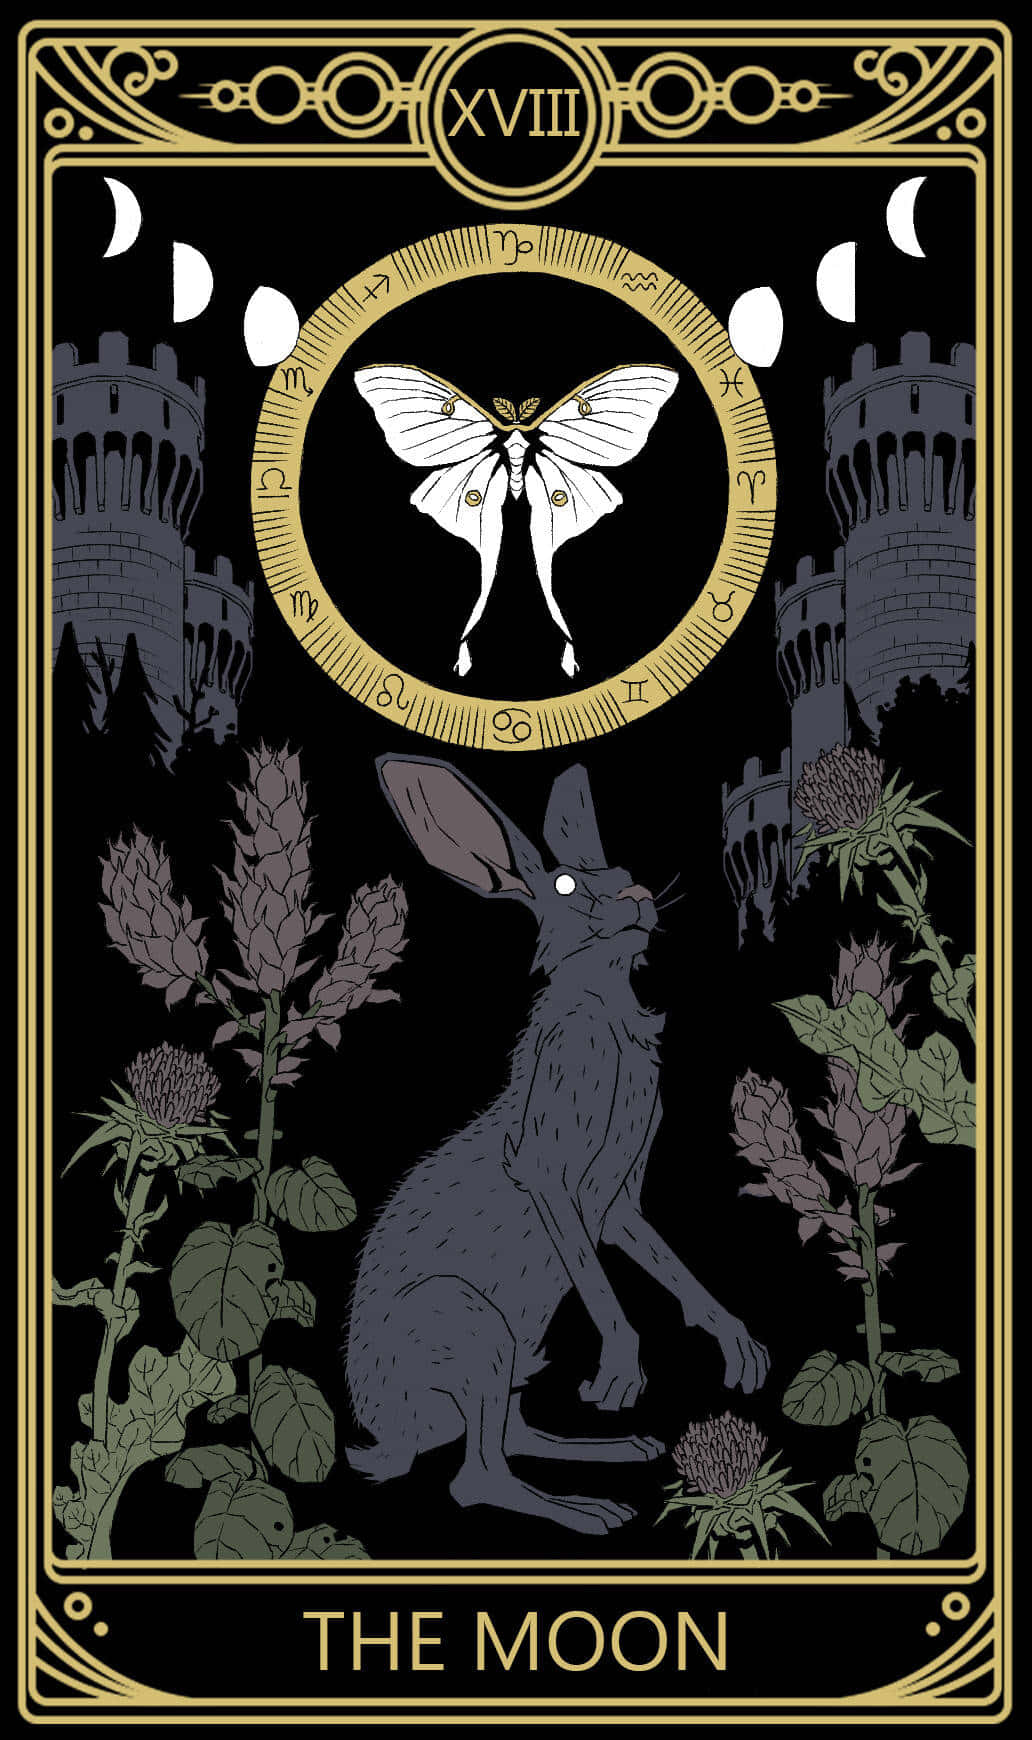 Tarot Card The Moon X V I I I Wallpaper